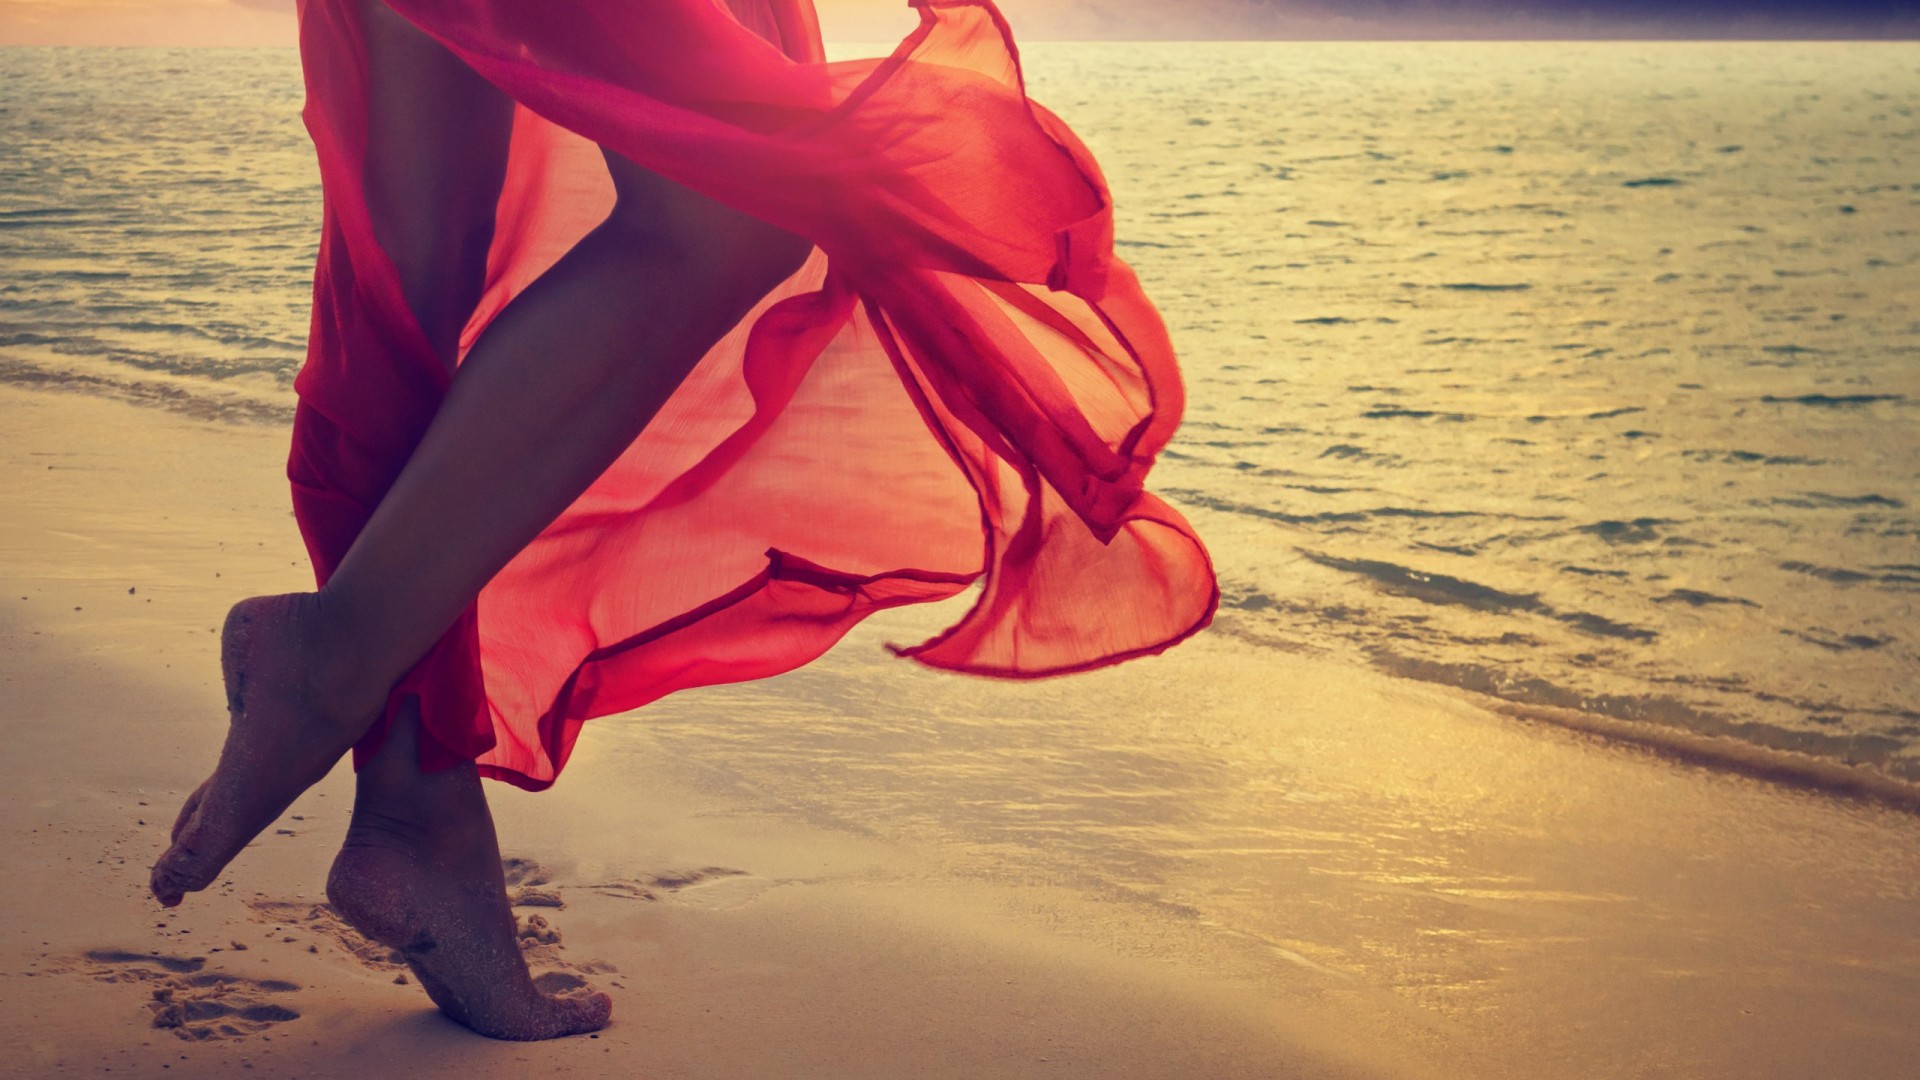 漫步于沙滩,美女,红色裙子,非主流壁纸